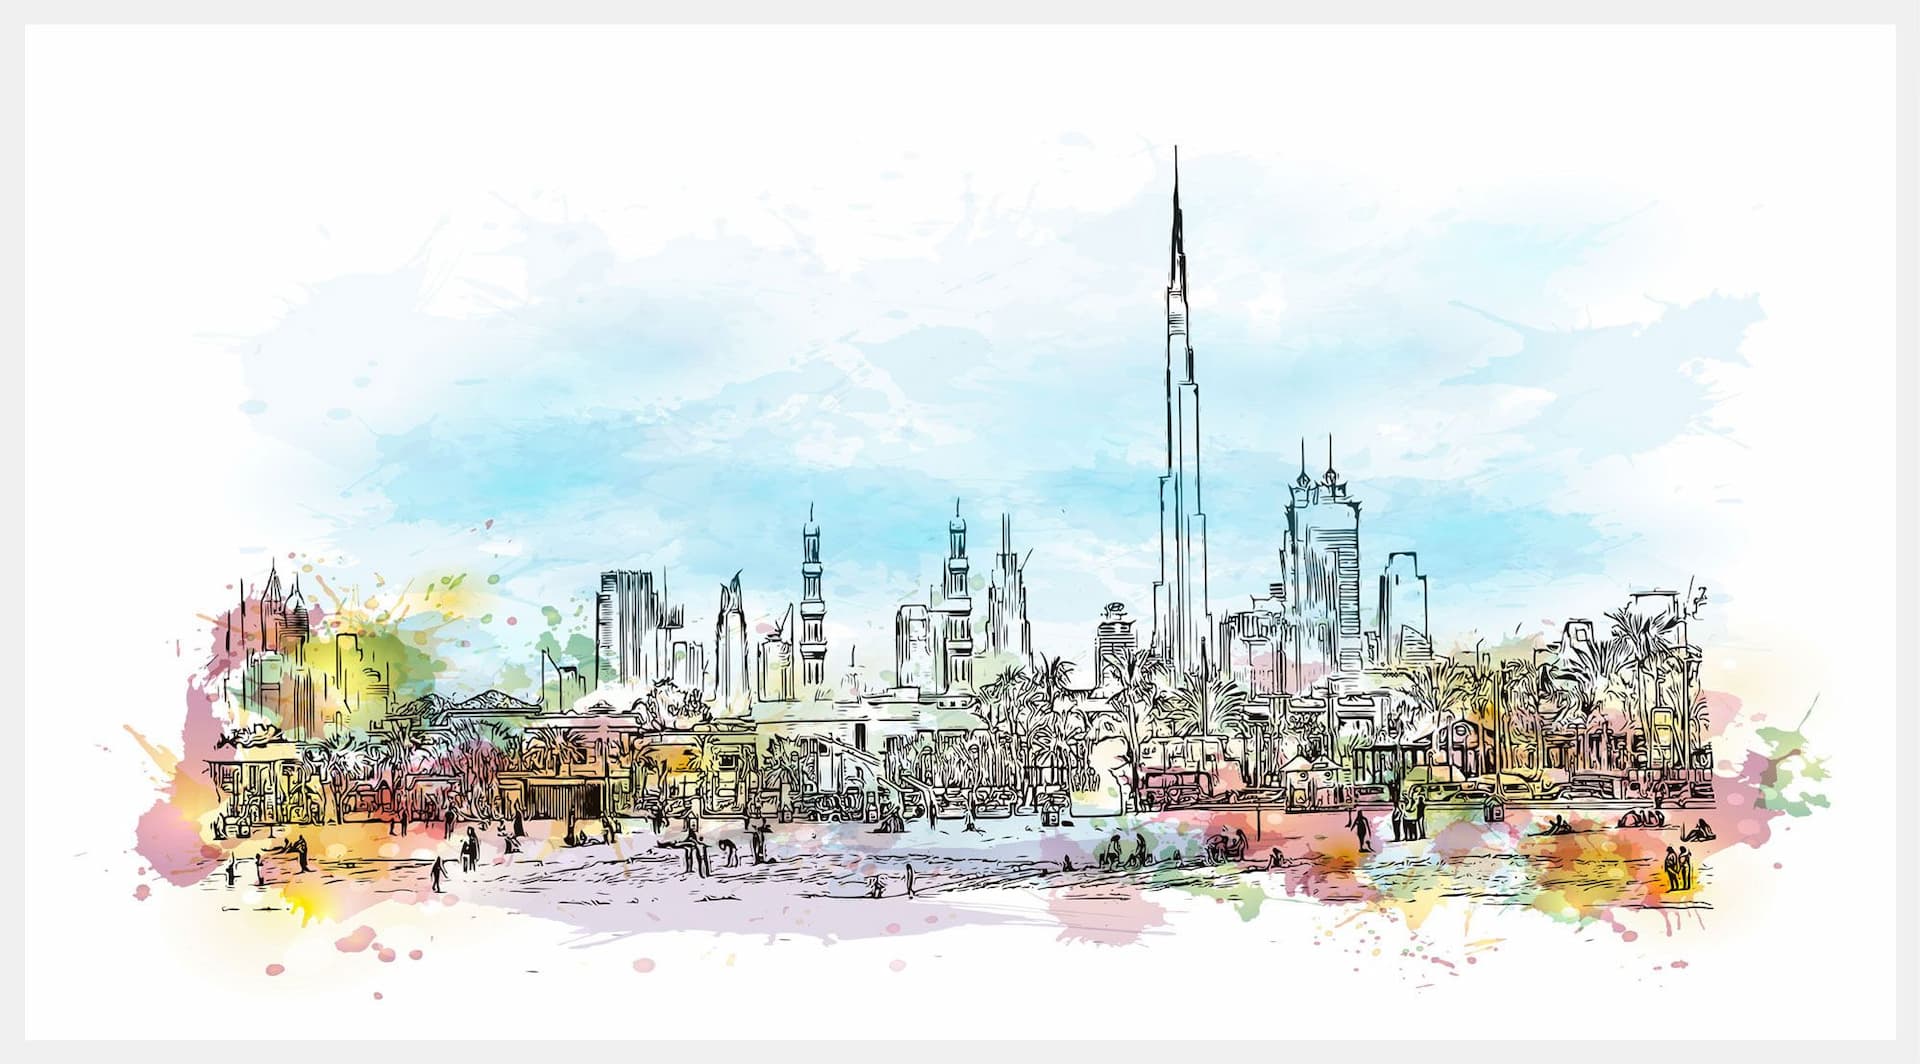 Dubai CommerCity, Dubai Culture Unite Efforts to Support the Creative Economy